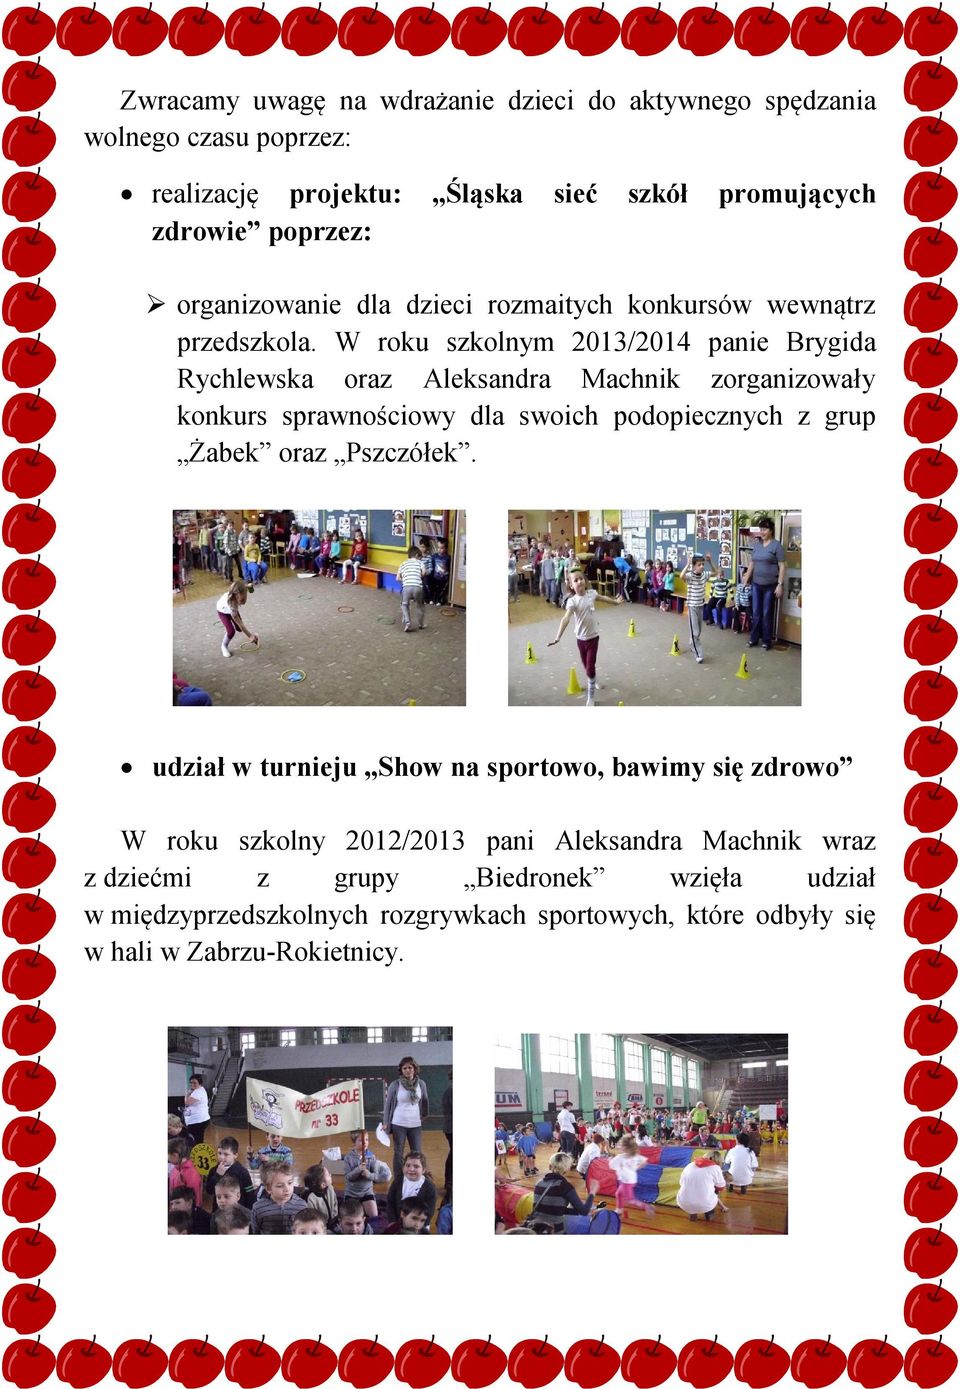 W roku szkolnym 2013/2014 panie Brygida Rychlewska oraz Aleksandra Machnik zorganizowały konkurs sprawnościowy dla swoich podopiecznych z grup Żabek oraz